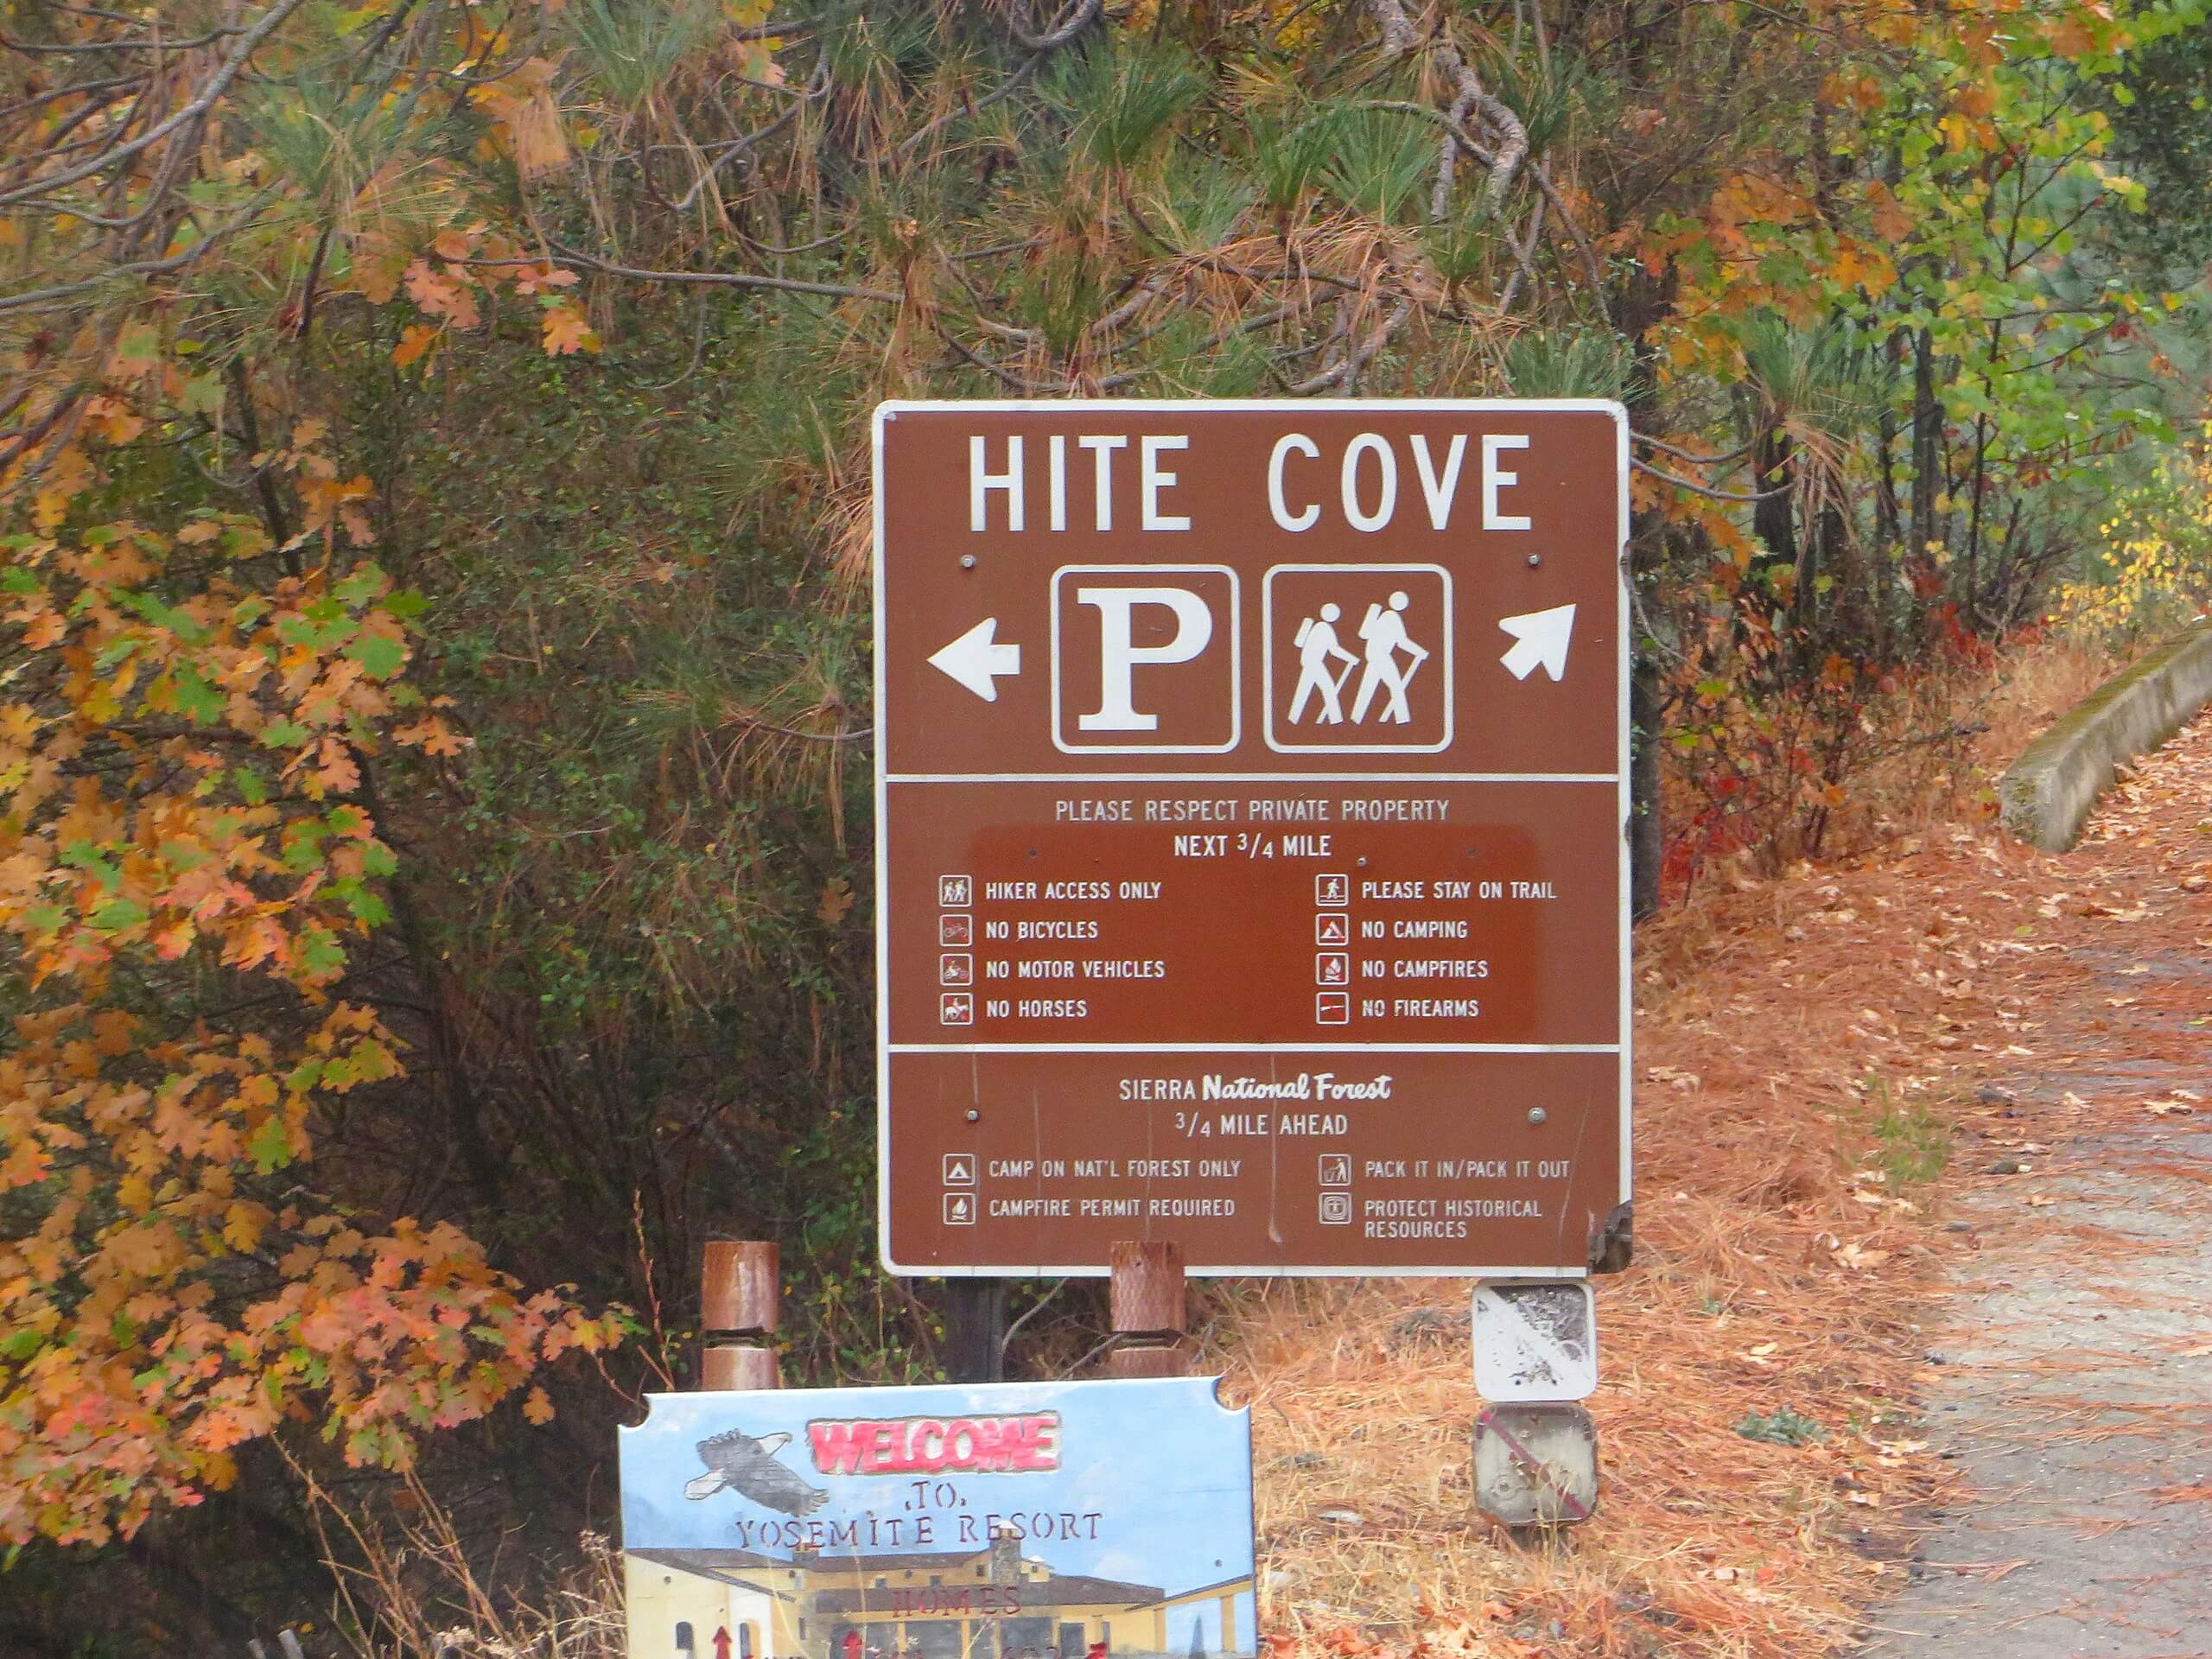 Hite Cove Road Hike